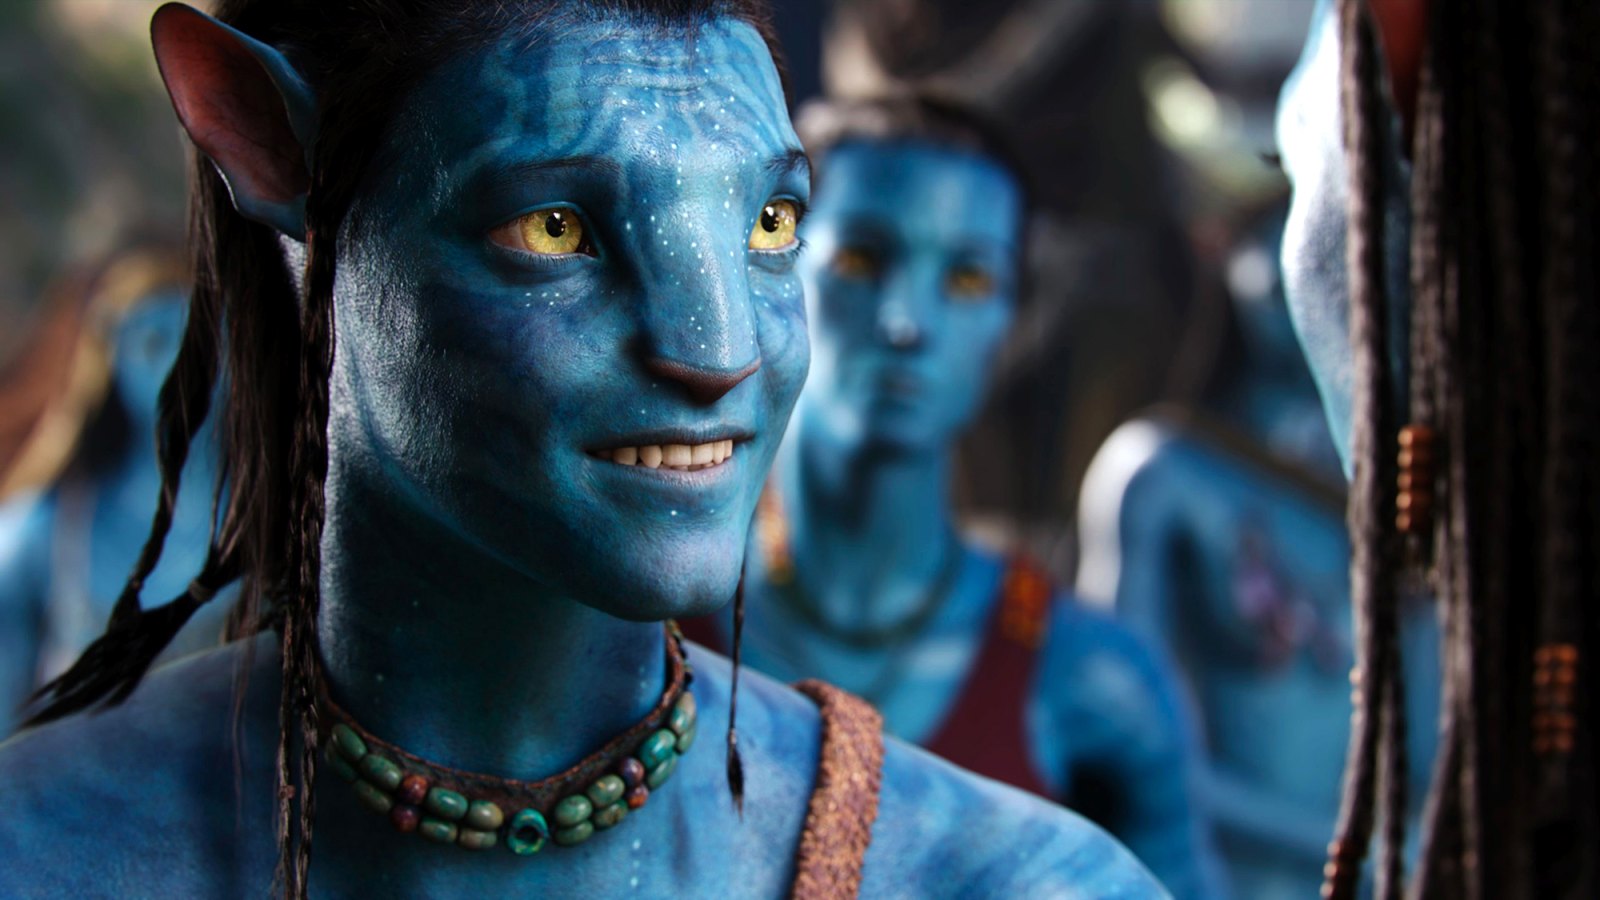 Avatar 2
Avatar 2 - cuộc phiêu lưu tiếp theo của Jake Sully và Neytiri sắp sửa trở lại trong tương lai gần. Khám phá thế giới mới Pandora, tham gia vào cuộc chiến giữa loài người và các sinh vật xanh, và nhận được nhiều bất ngờ đầy kịch tính. Hãy xem hình liên quan để đắm chìm trong thế giới tuyệt đẹp này!